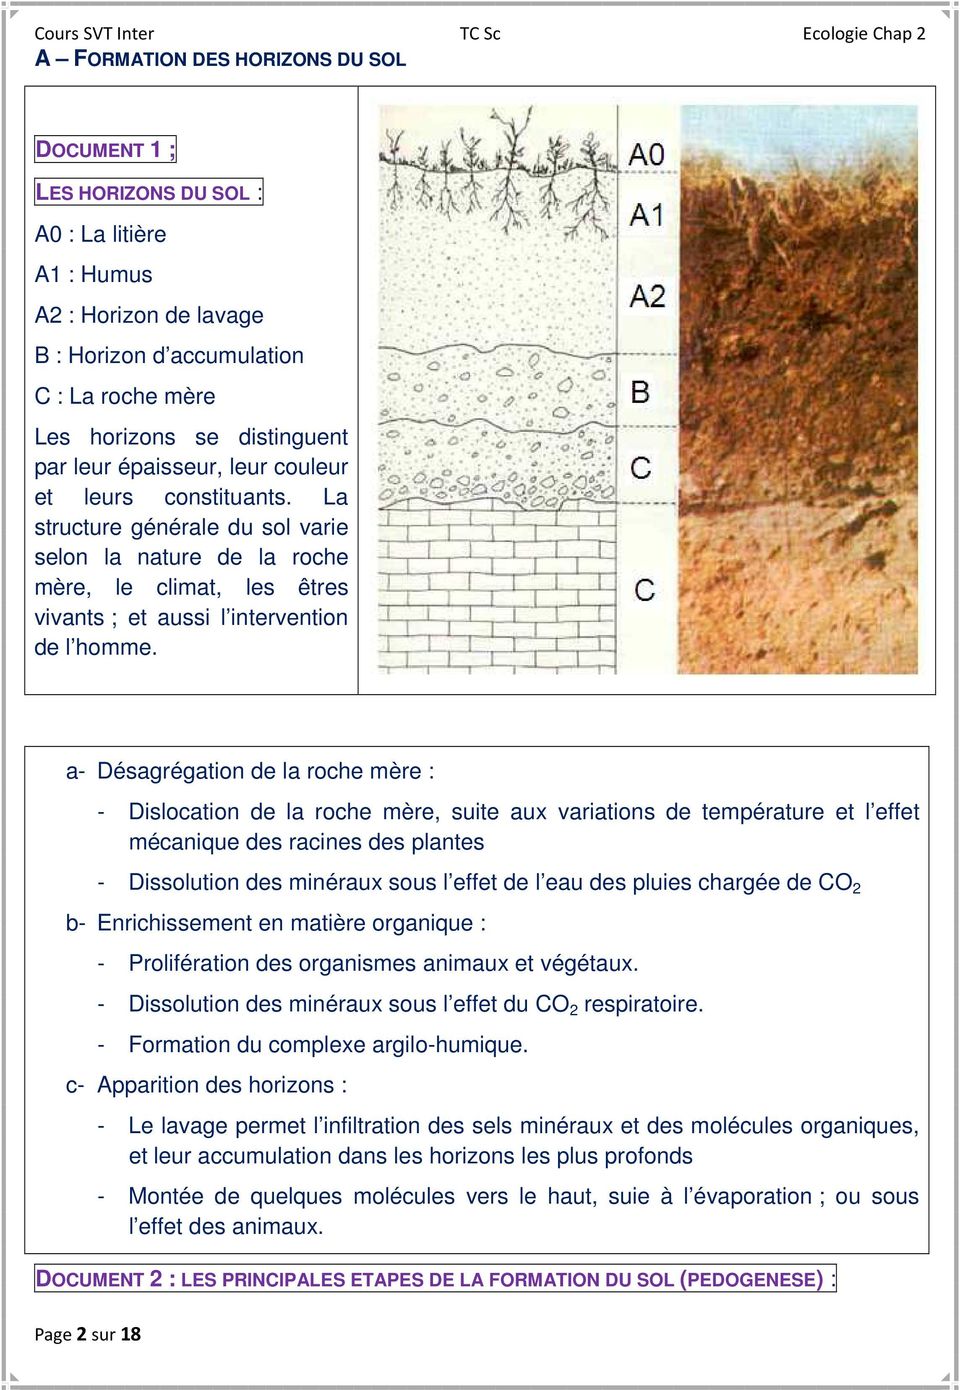 a- Désagrégation de la roche mère : Page 2 sur 18 - Dislocation de la roche mère, suite aux variations de température et l effet mécanique des racines des plantes - Dissolution des minéraux sous l